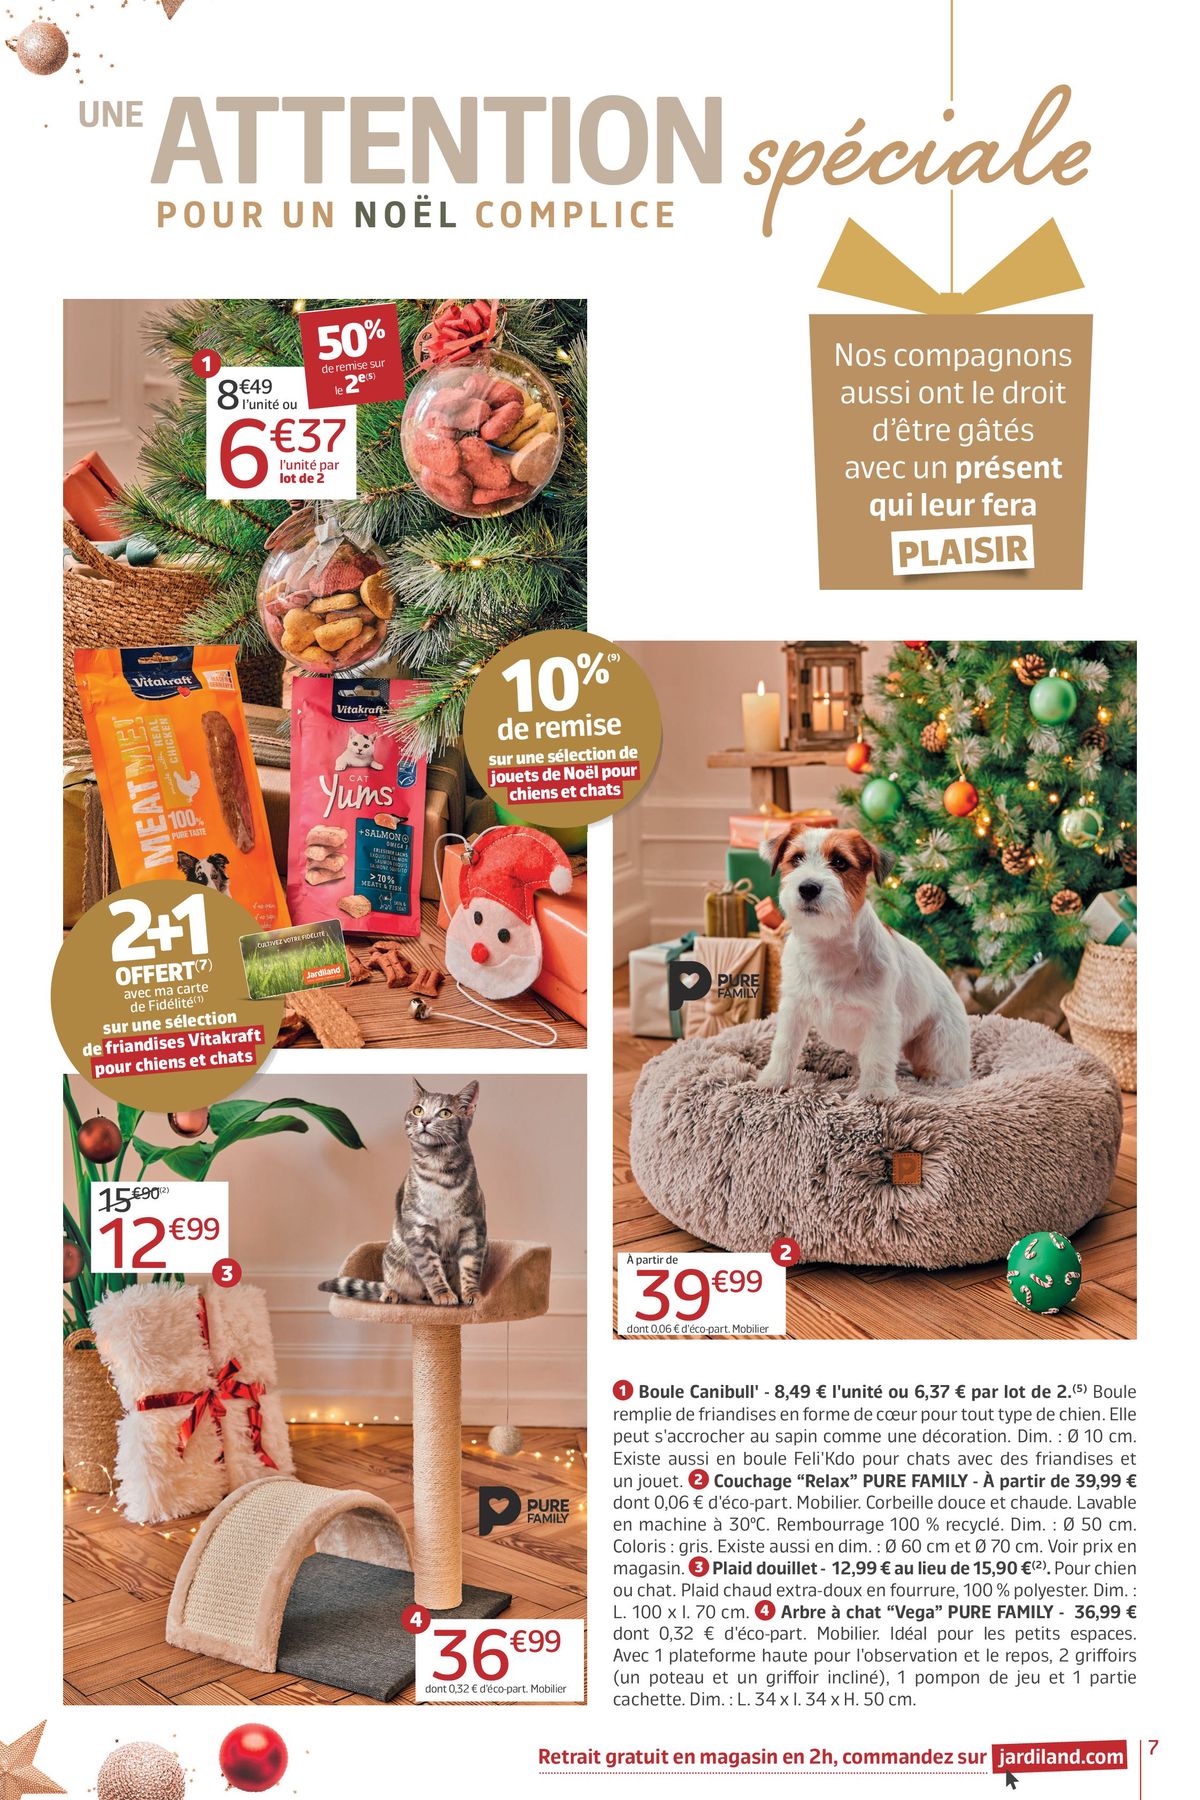 Catalogue Un énorme Noël, page 00007